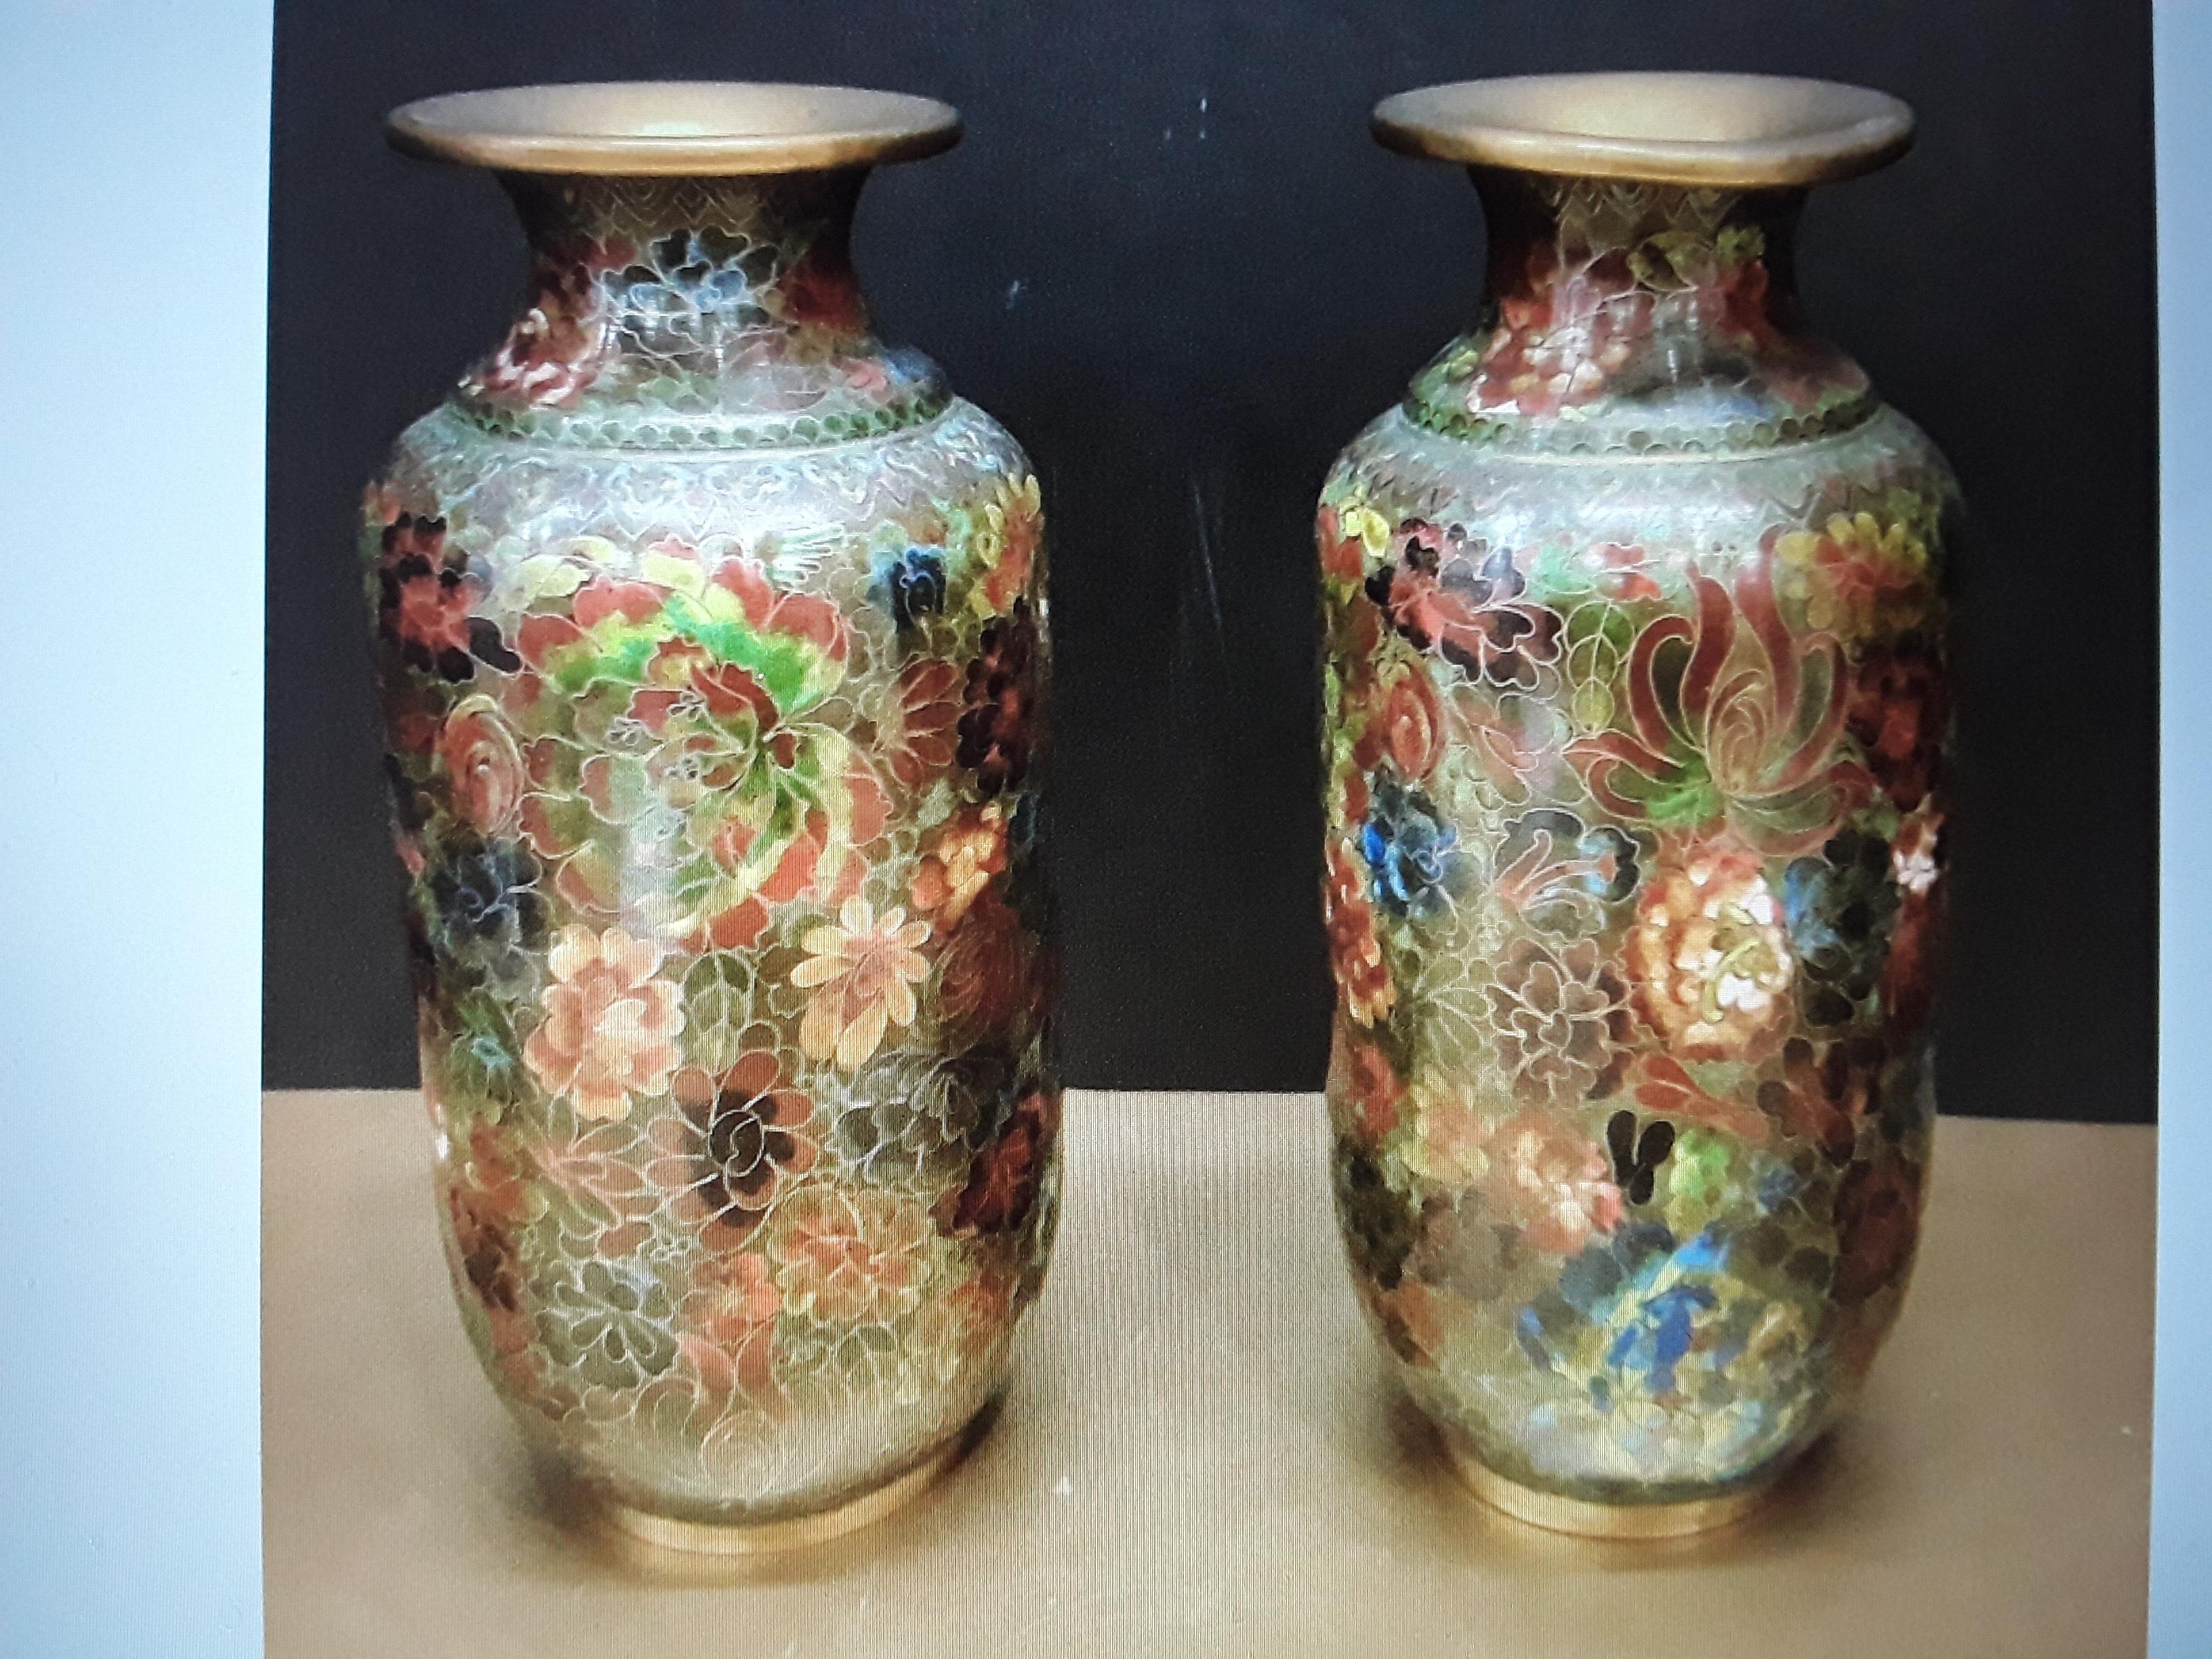 Une superbe paire de vases Cloissone asiatiques anciens. Tons verts et terreux. Belle paire avec une très petite bosse non perceptible. Cela ne gêne en rien.